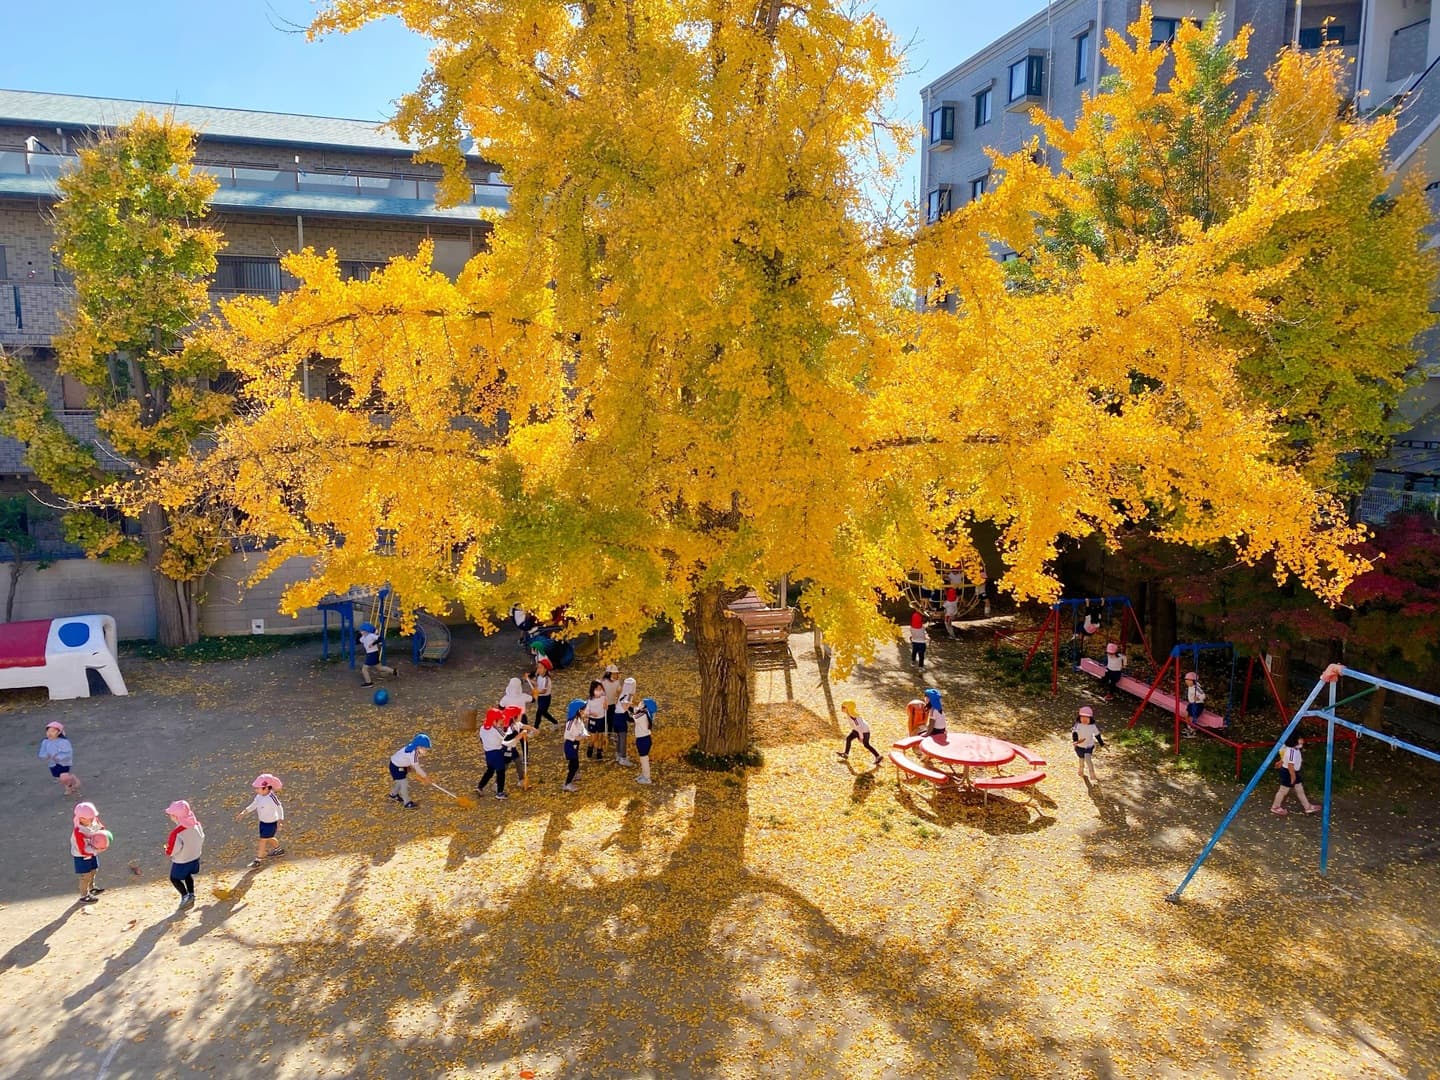 園庭の大きな銀杏の木下で遊ぶ子ども達